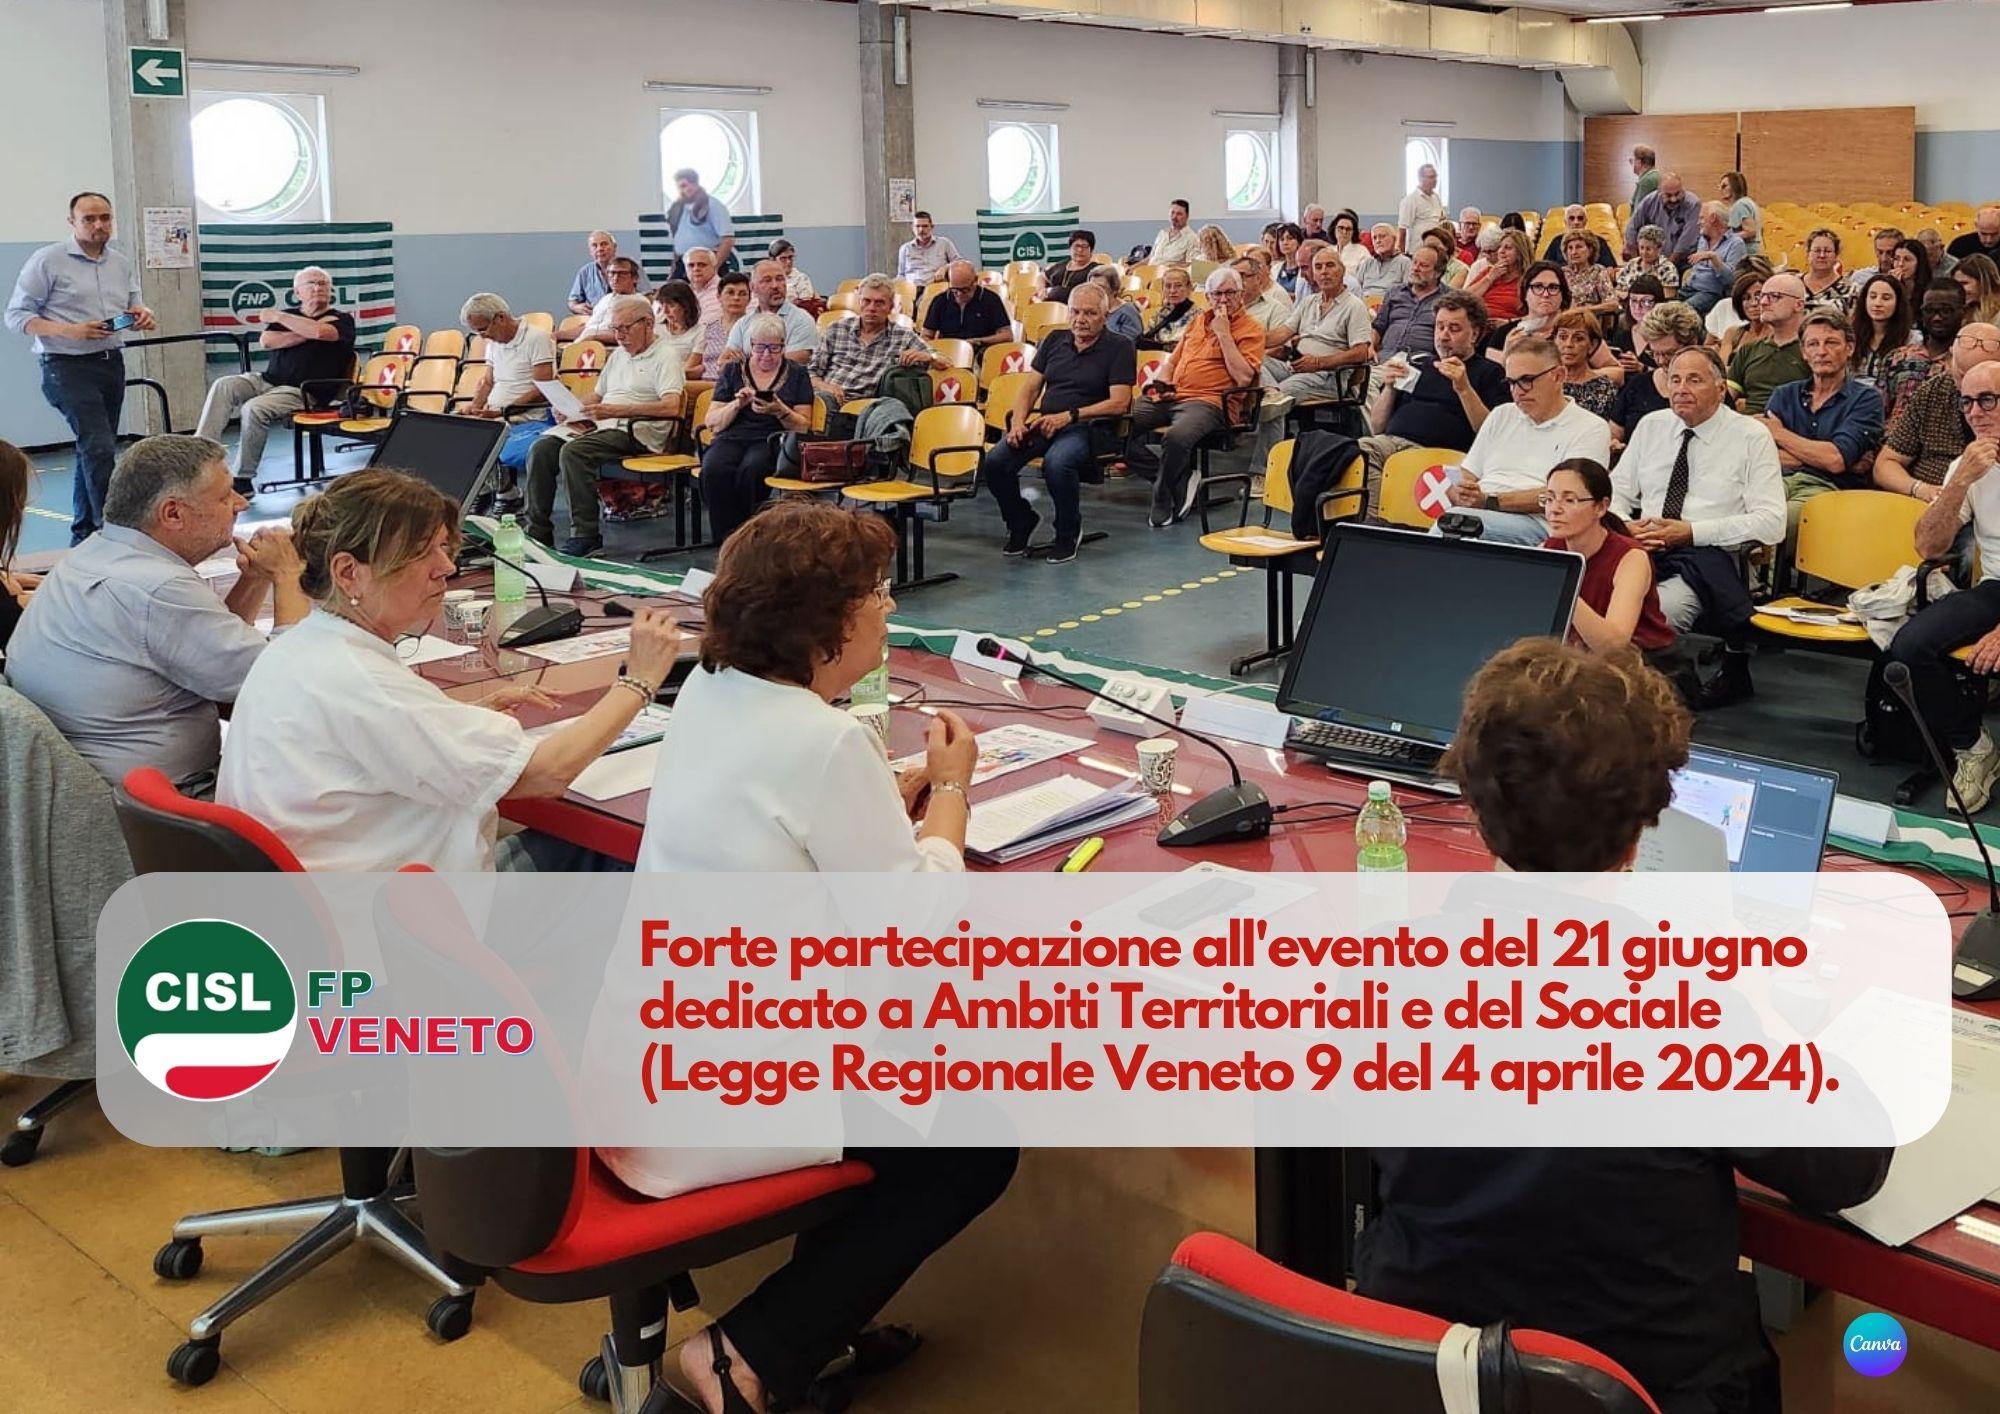 CISL FP Veneto. Forte partecipazione all'evento del 21 giugno dedicato a Ambiti Territoriali e del Sociale